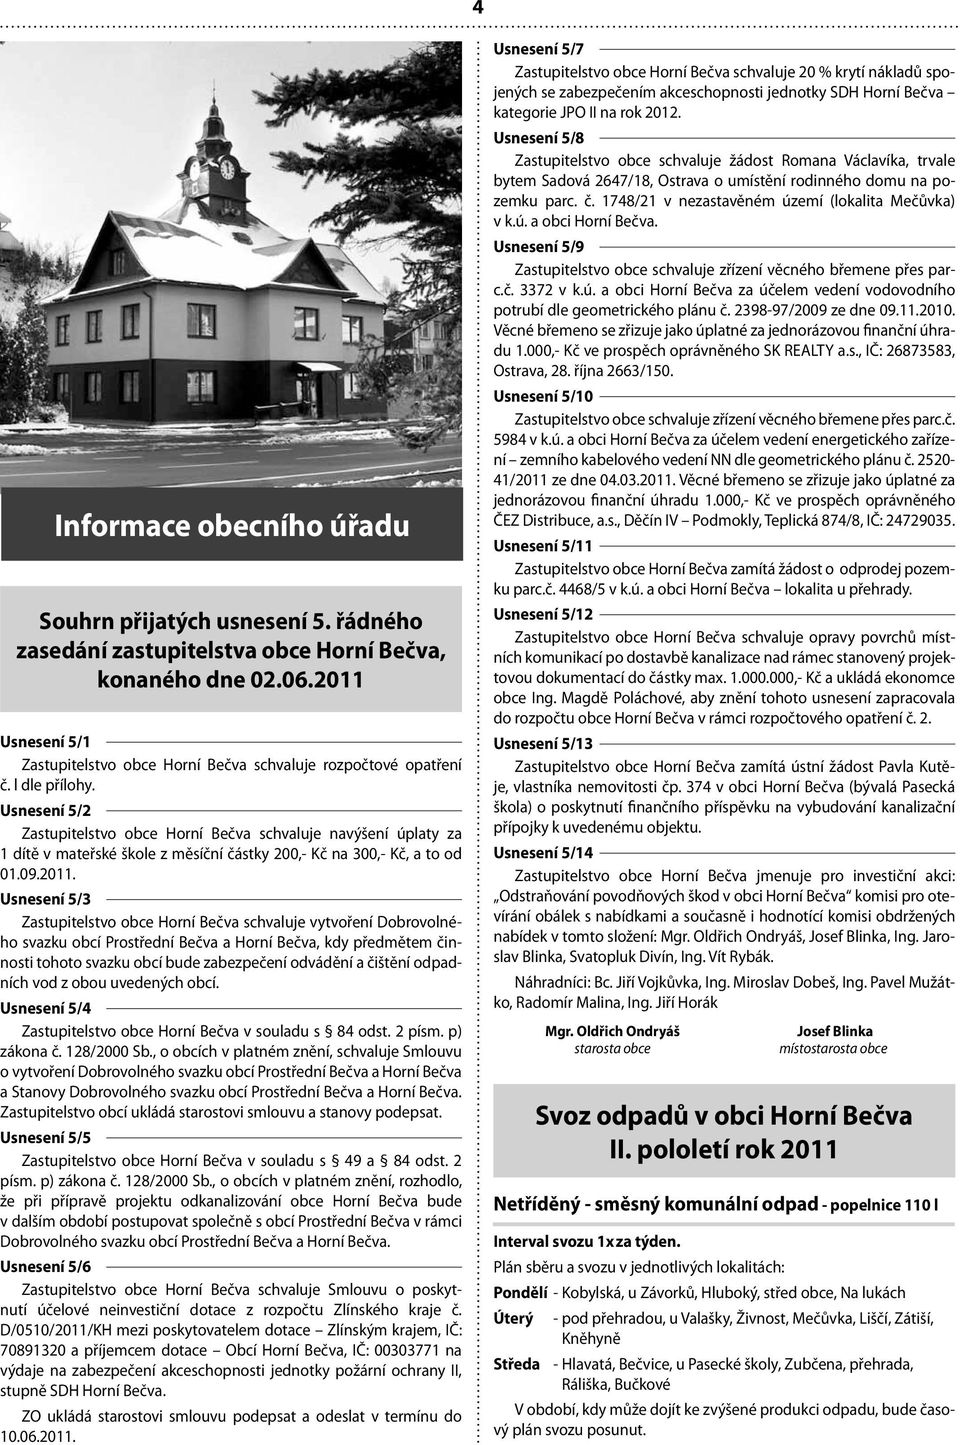 Usnesení 5/2 Zastupitelstvo obce Horní Bečva schvaluje navýšení úplaty za 1 dítě v mateřské škole z měsíční částky 200,- Kč na 300,- Kč, a to od 01.09.2011.